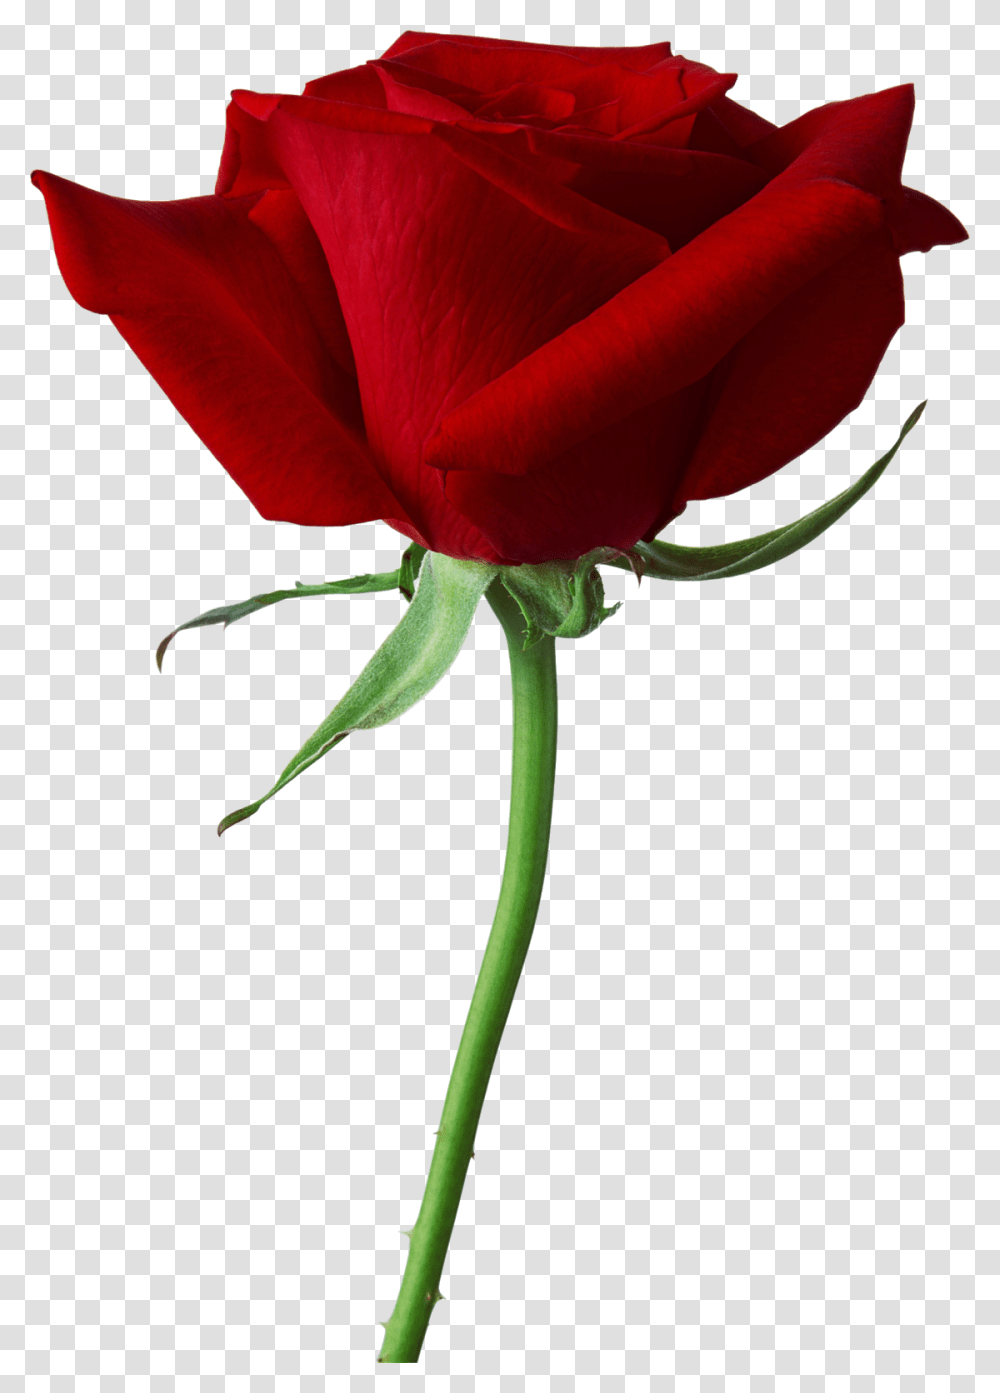 Marcos Gratis Para Fotos Flores Rosas Rojas, Rose, Flower, Plant, Blossom Transparent Png